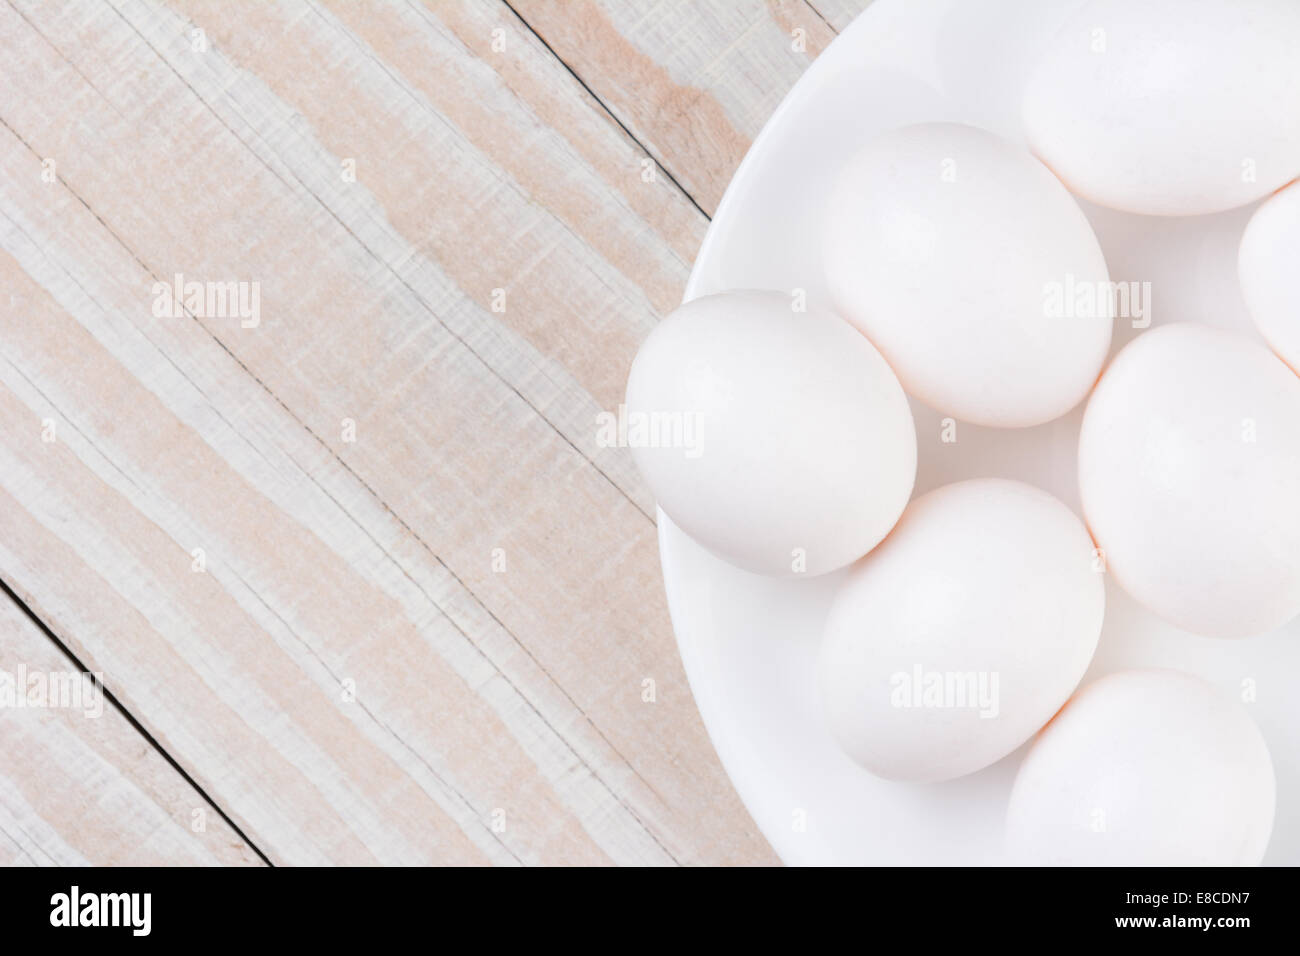 High angle view of a white bol rempli d'œufs blancs sur une table de cuisine rustique en bois blanc. Format horizontal with copy space Banque D'Images